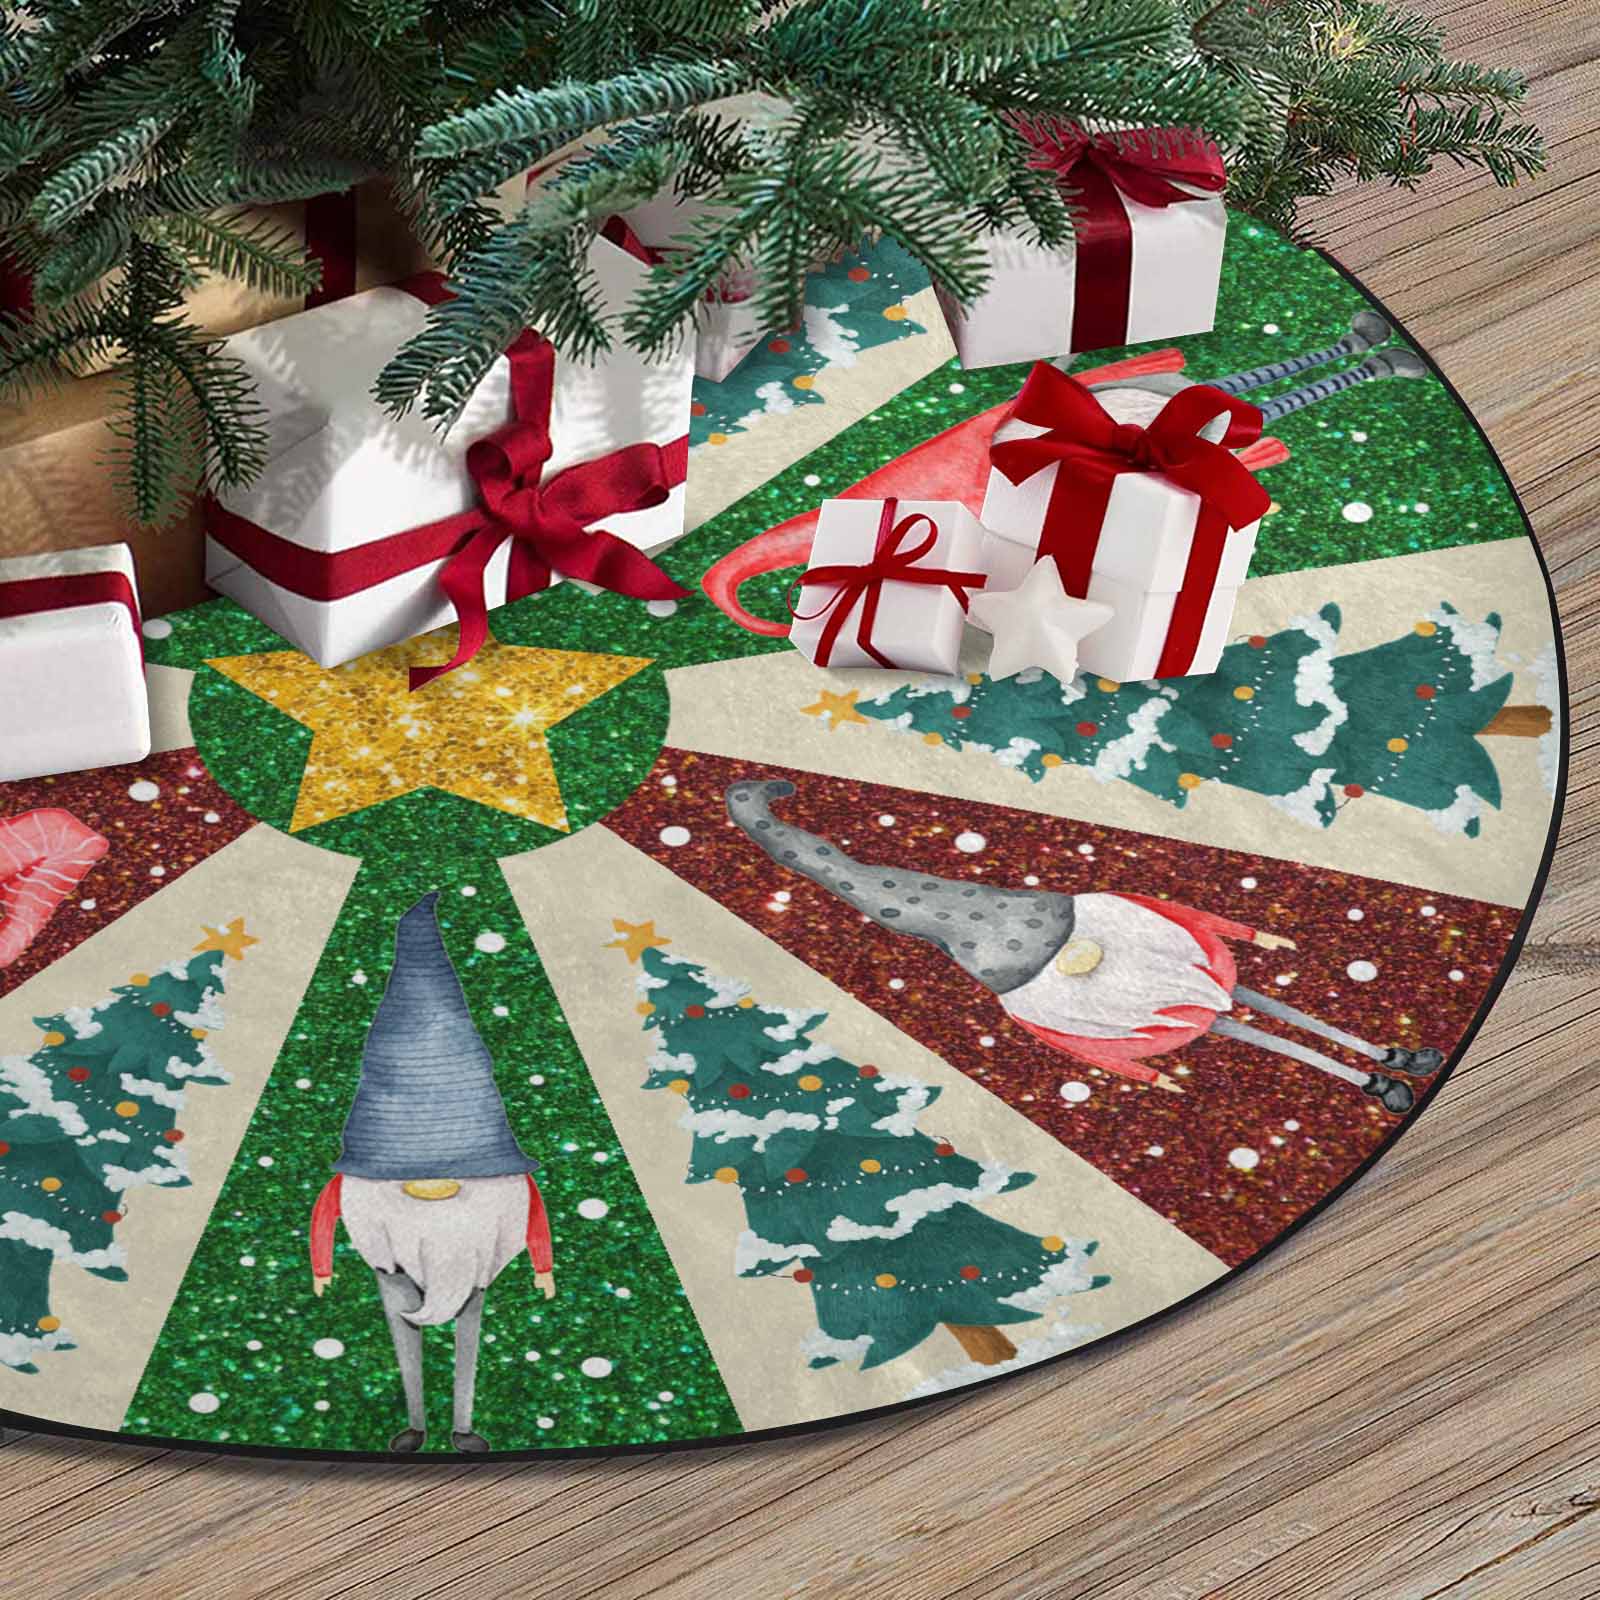 Christmas Tree Skirt, Decoration For Christmas Tree, Gnome And Christmas Tree